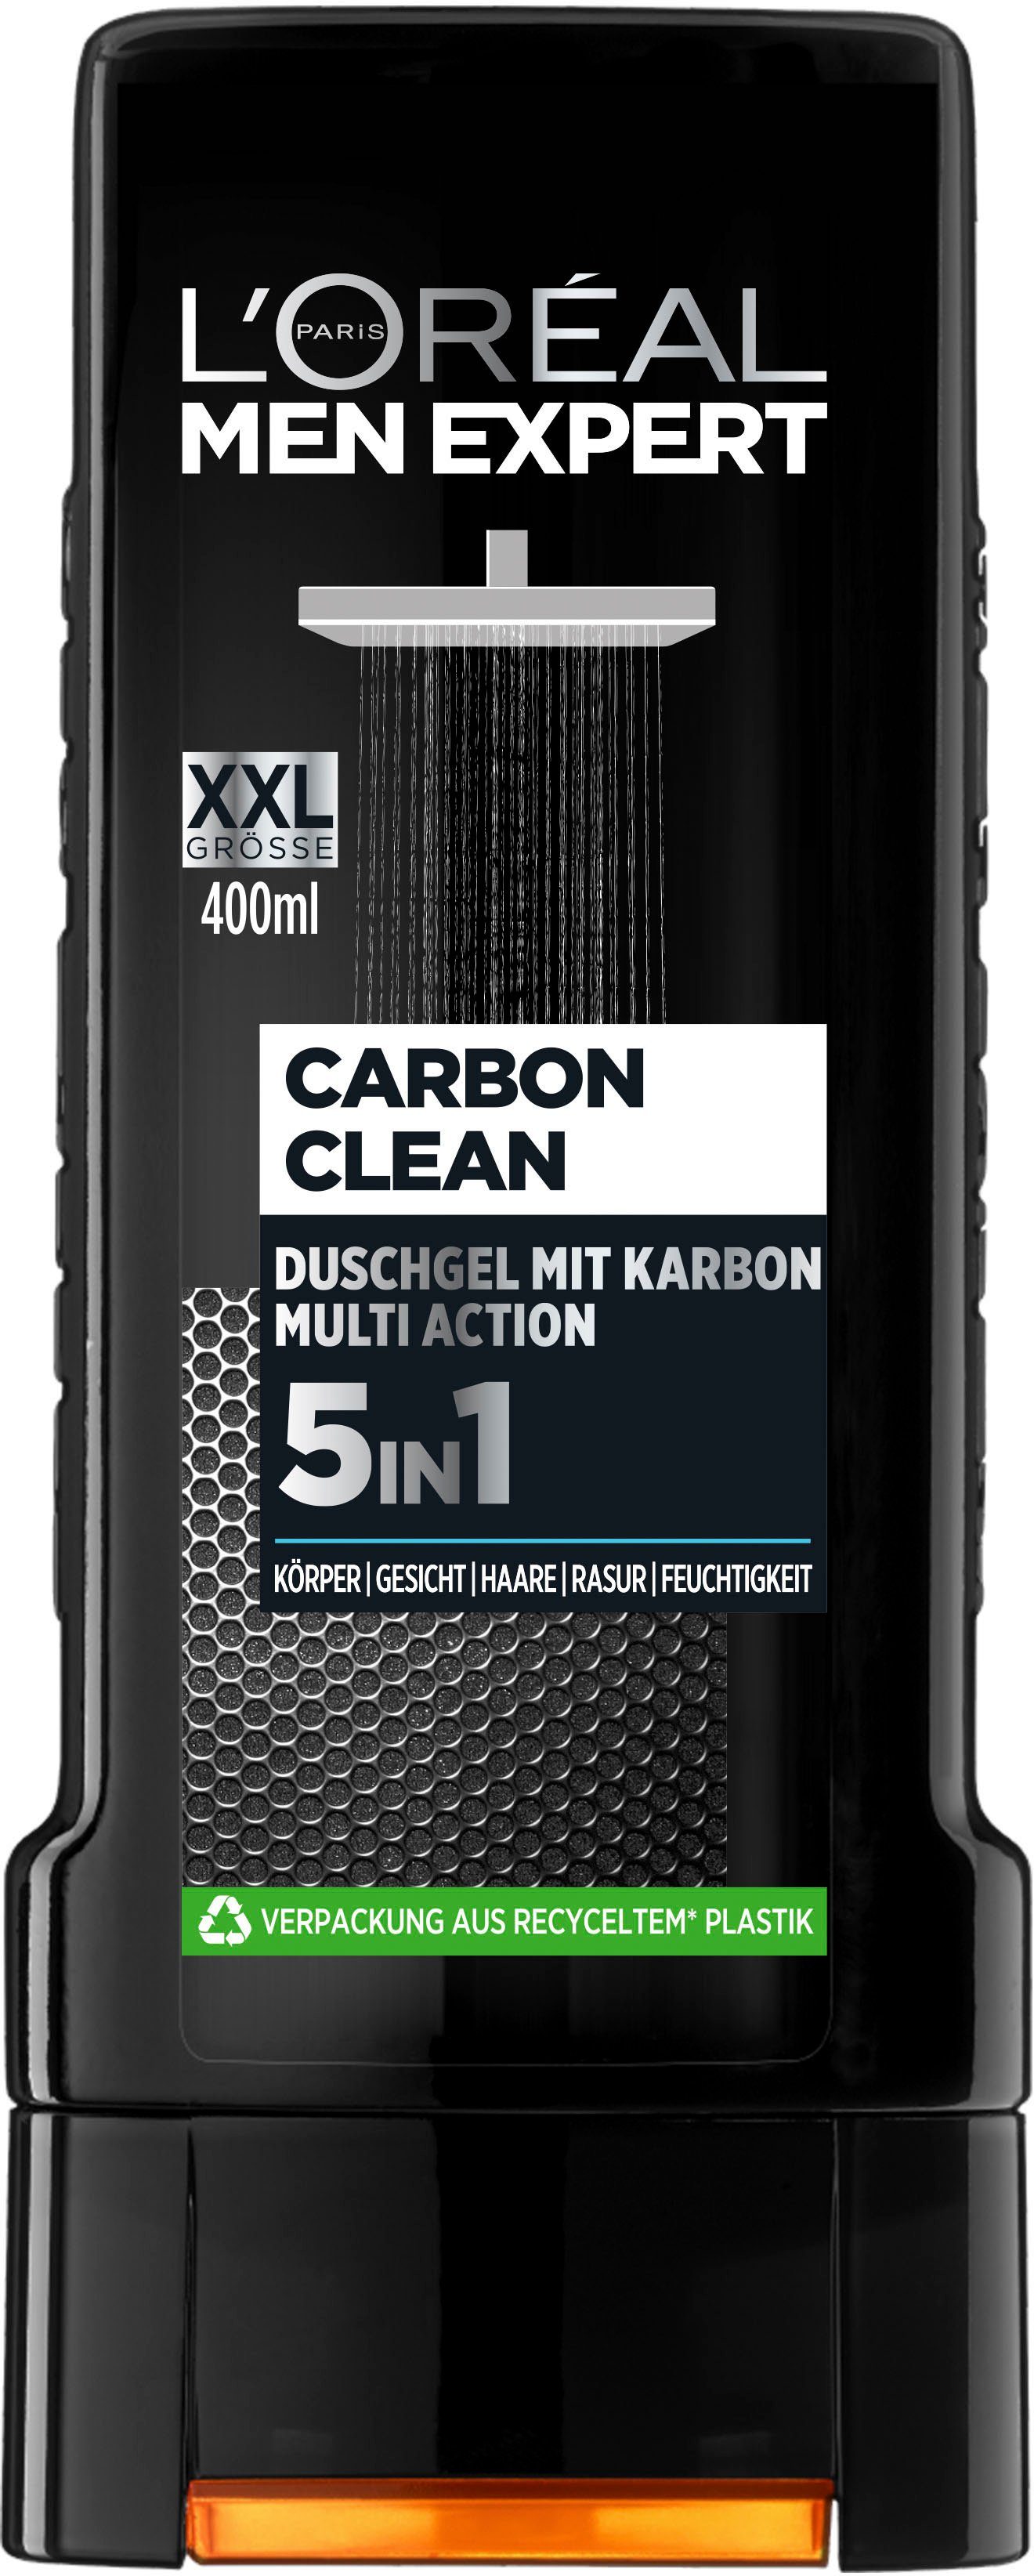 5in1 Duschgel EXPERT 6-tlg. Carbon MEN XXL, PARIS Clean L'ORÉAL